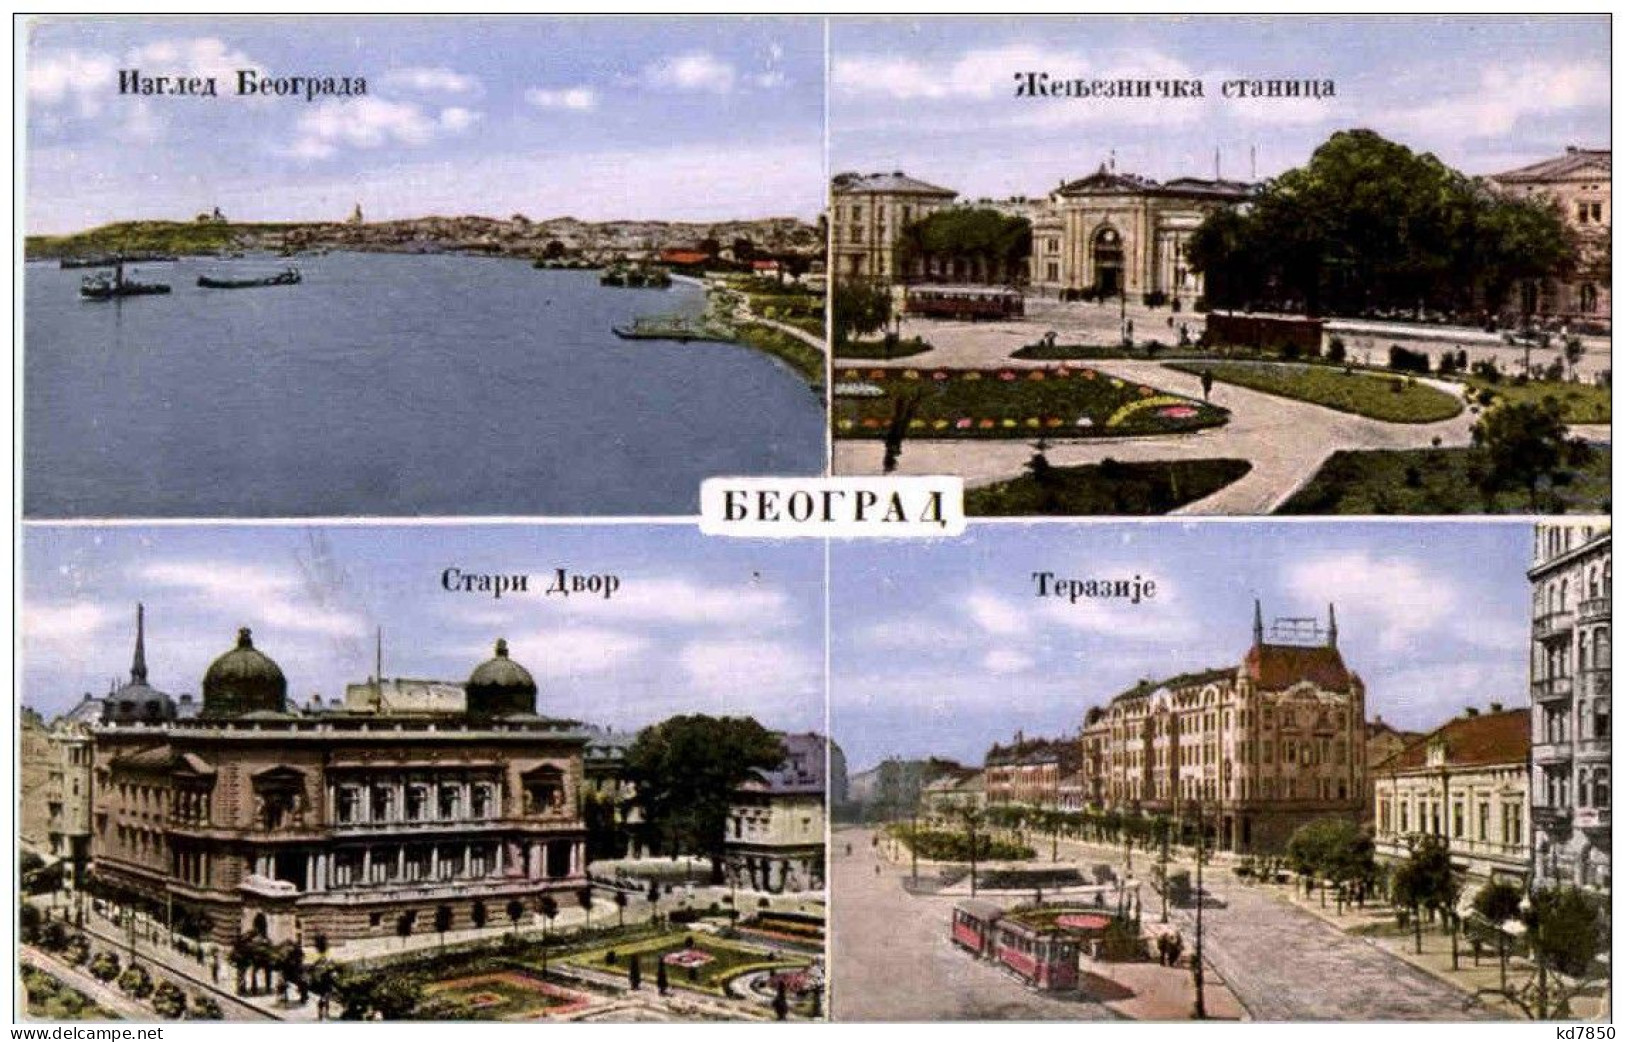 Belgrad - Serbia